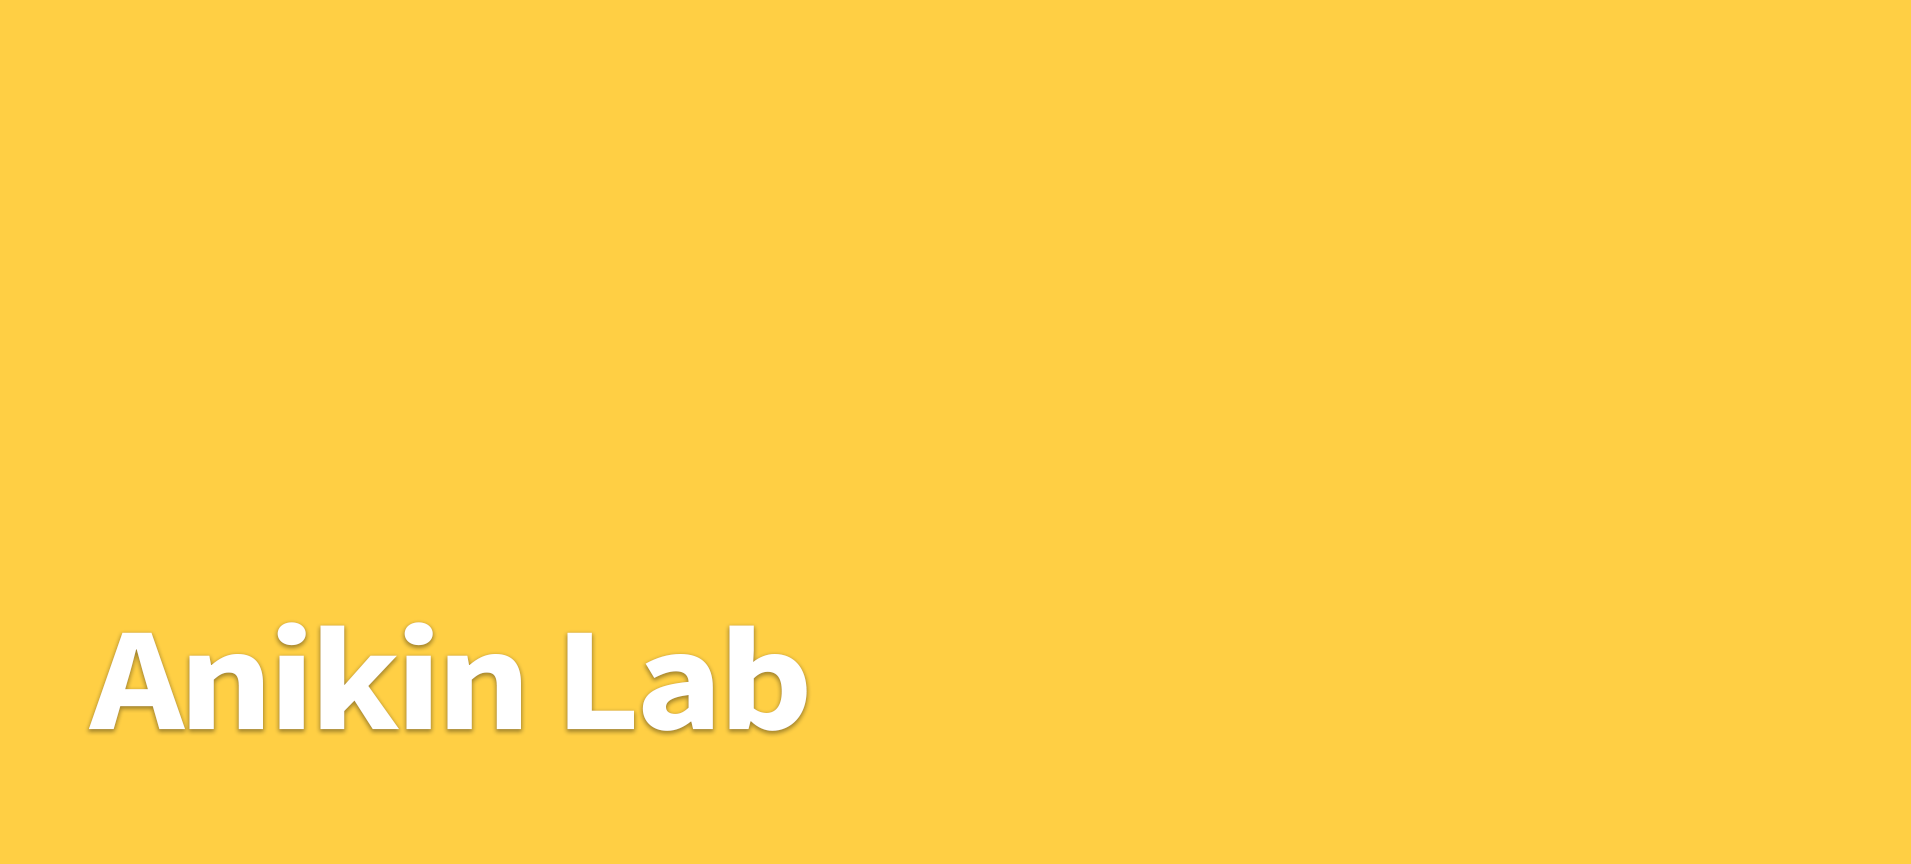 Anikin Lab